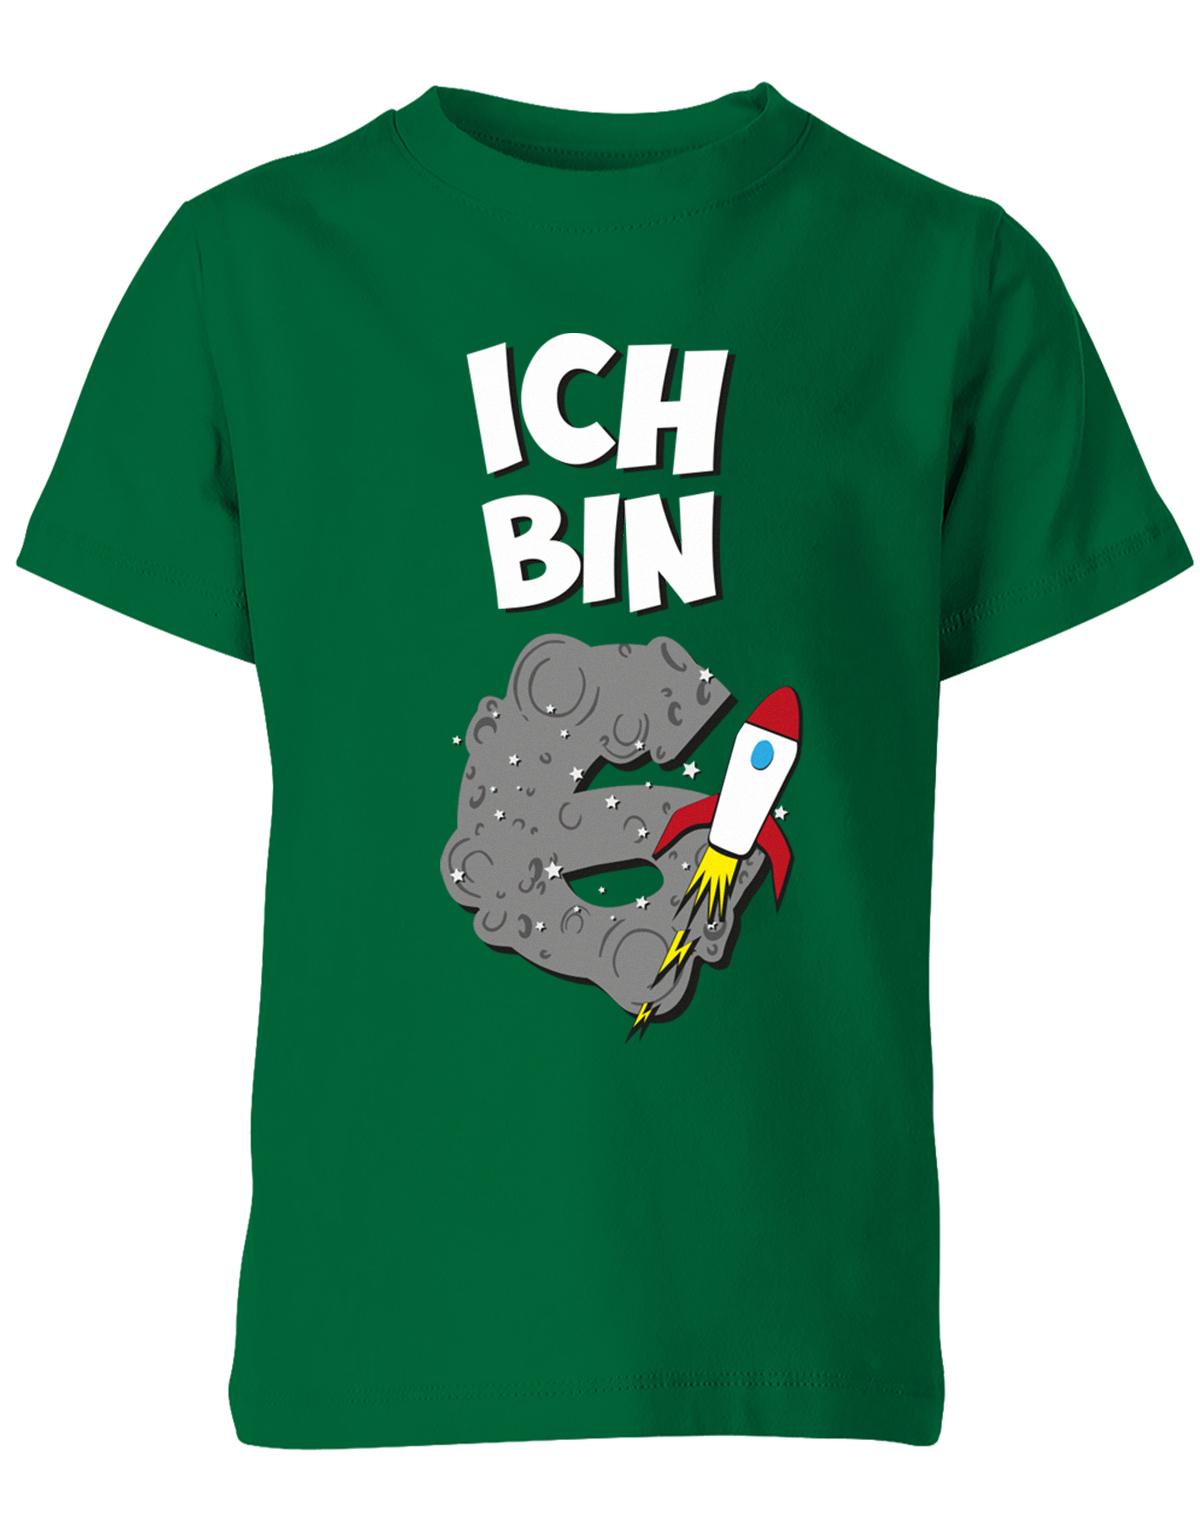 ich-bin-6-weltraum-rakete-planet-geburtstag-kinder-shirt-gruen